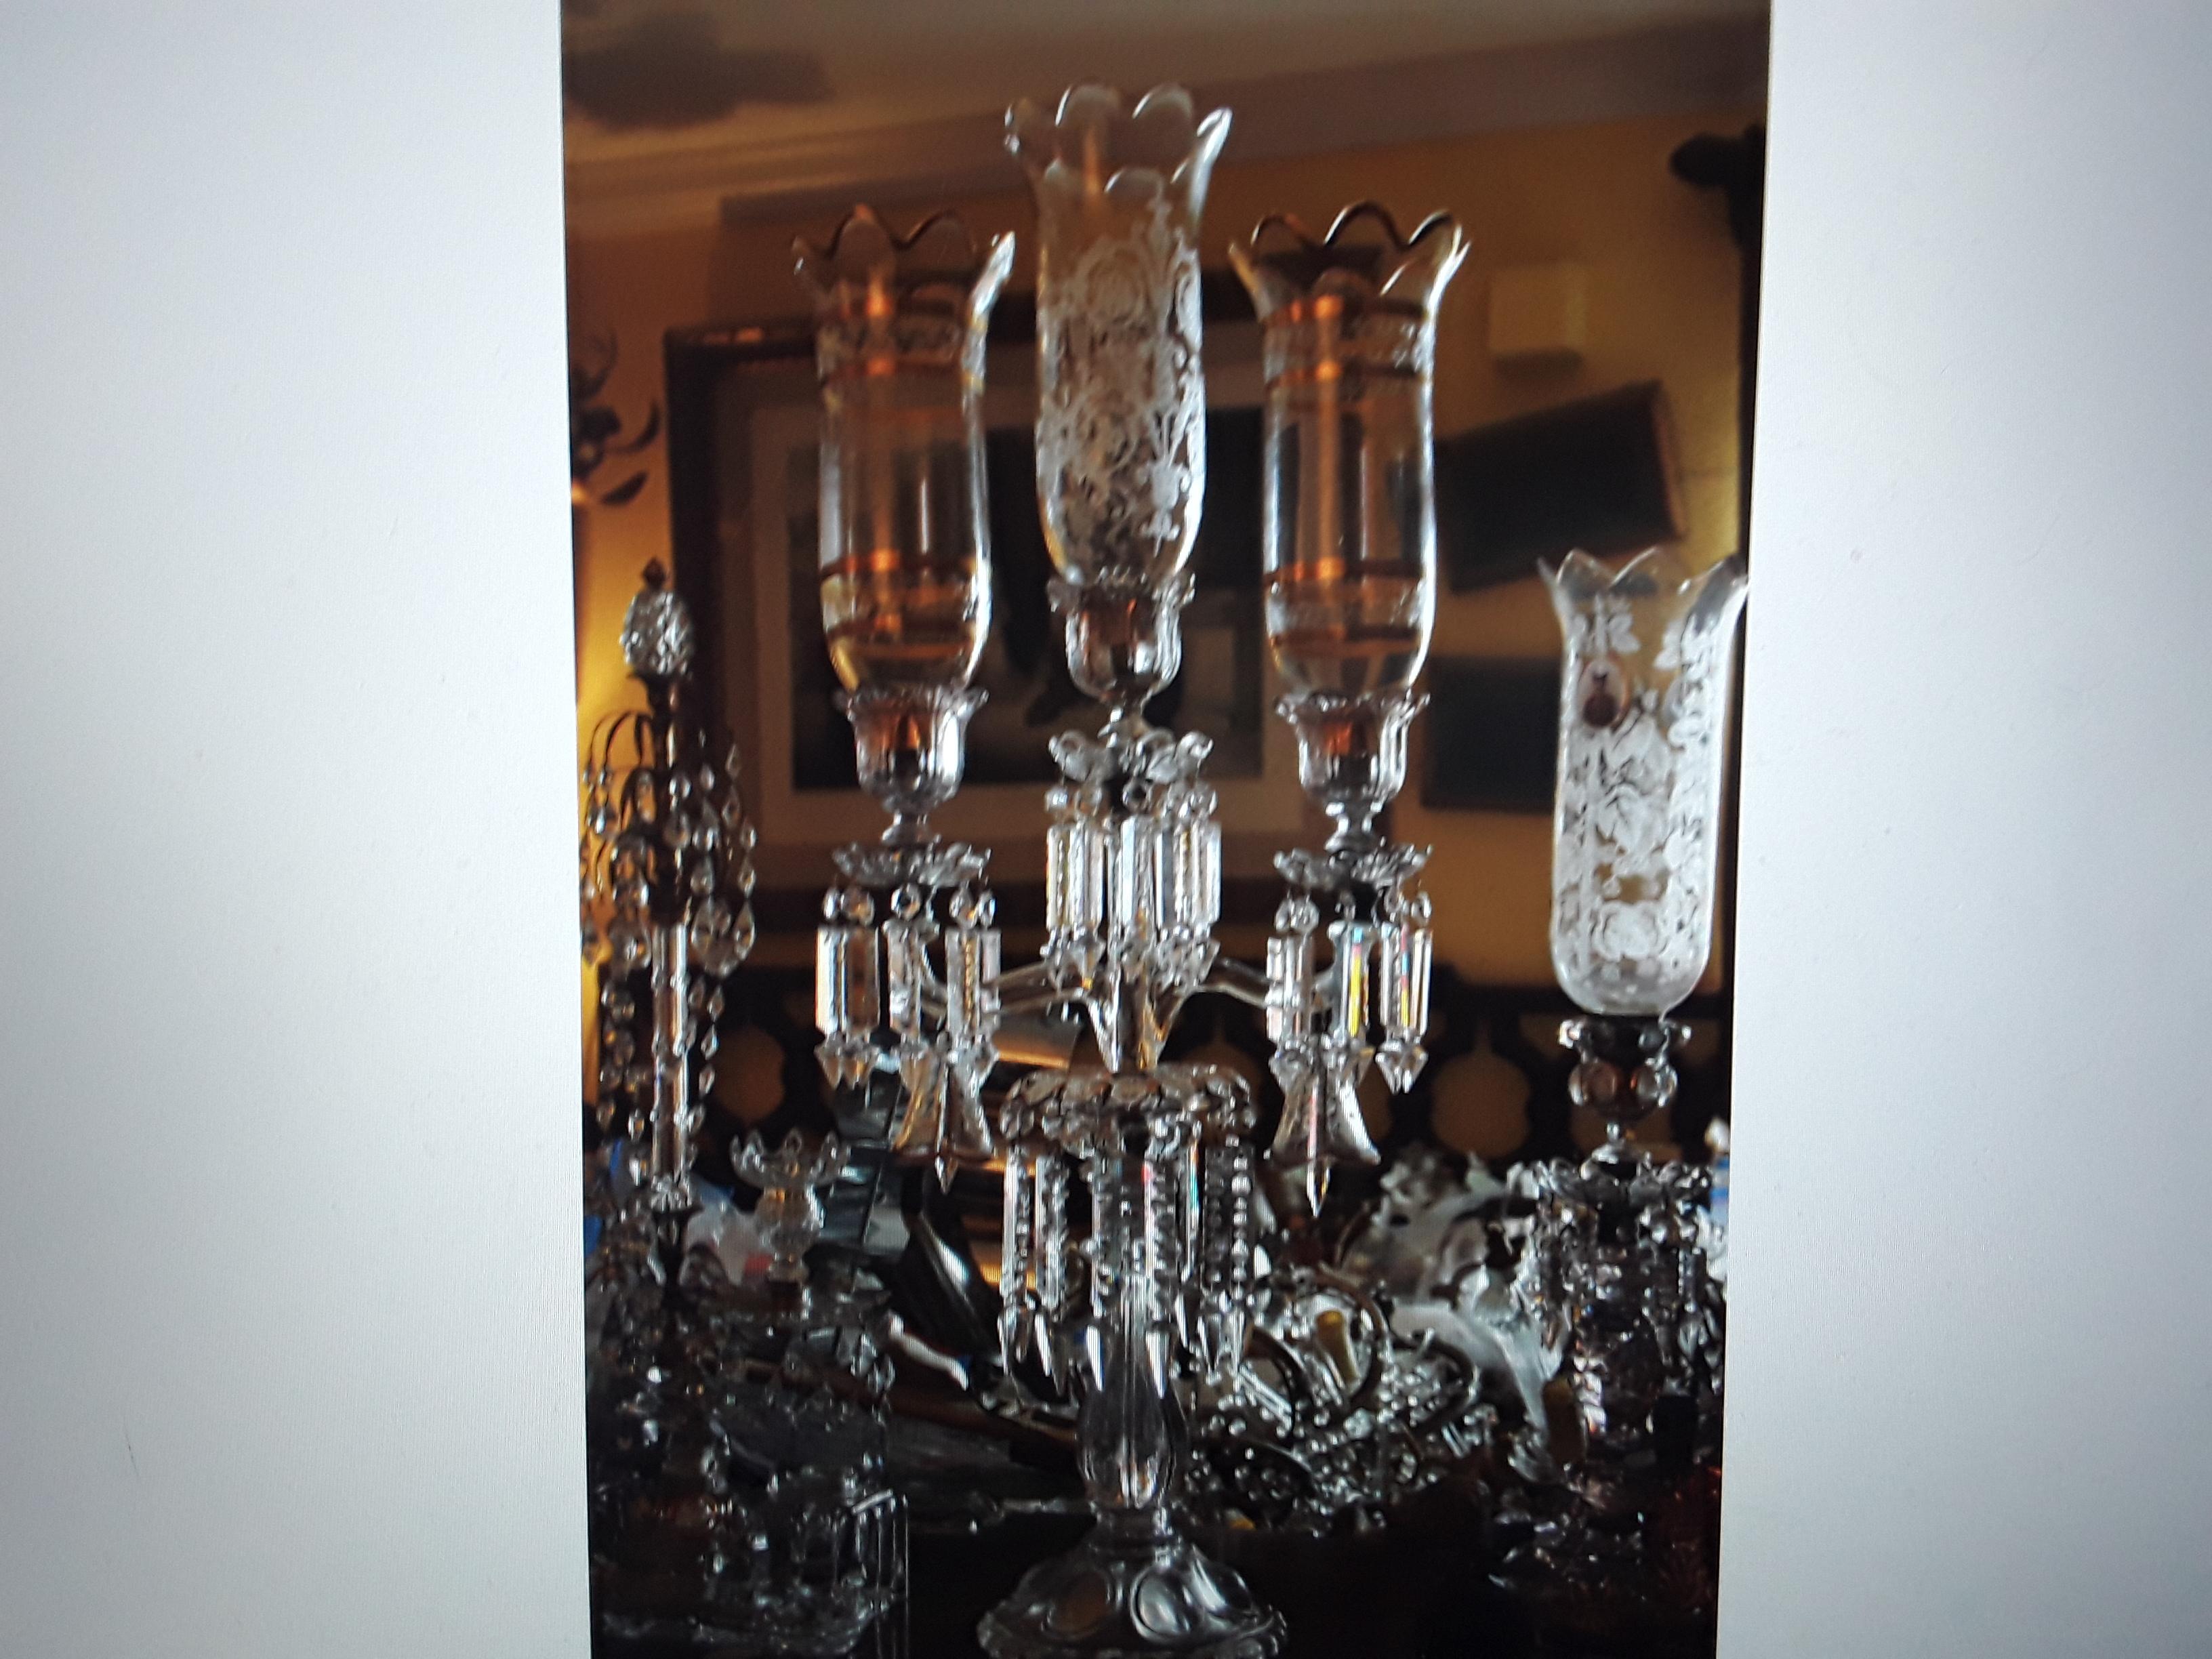 Grand Scale c1890's Französisch Napoleon III Baccarat Kristall 3 Licht Kandelaber. Ein gewaltiges Stück! Handgemalter Blumendekor mit 24K-Farbtönen. Mit Blumen bemalte Glocken. Bitte sehen Sie sich die Bilder genau an, denn sie erzählen eine